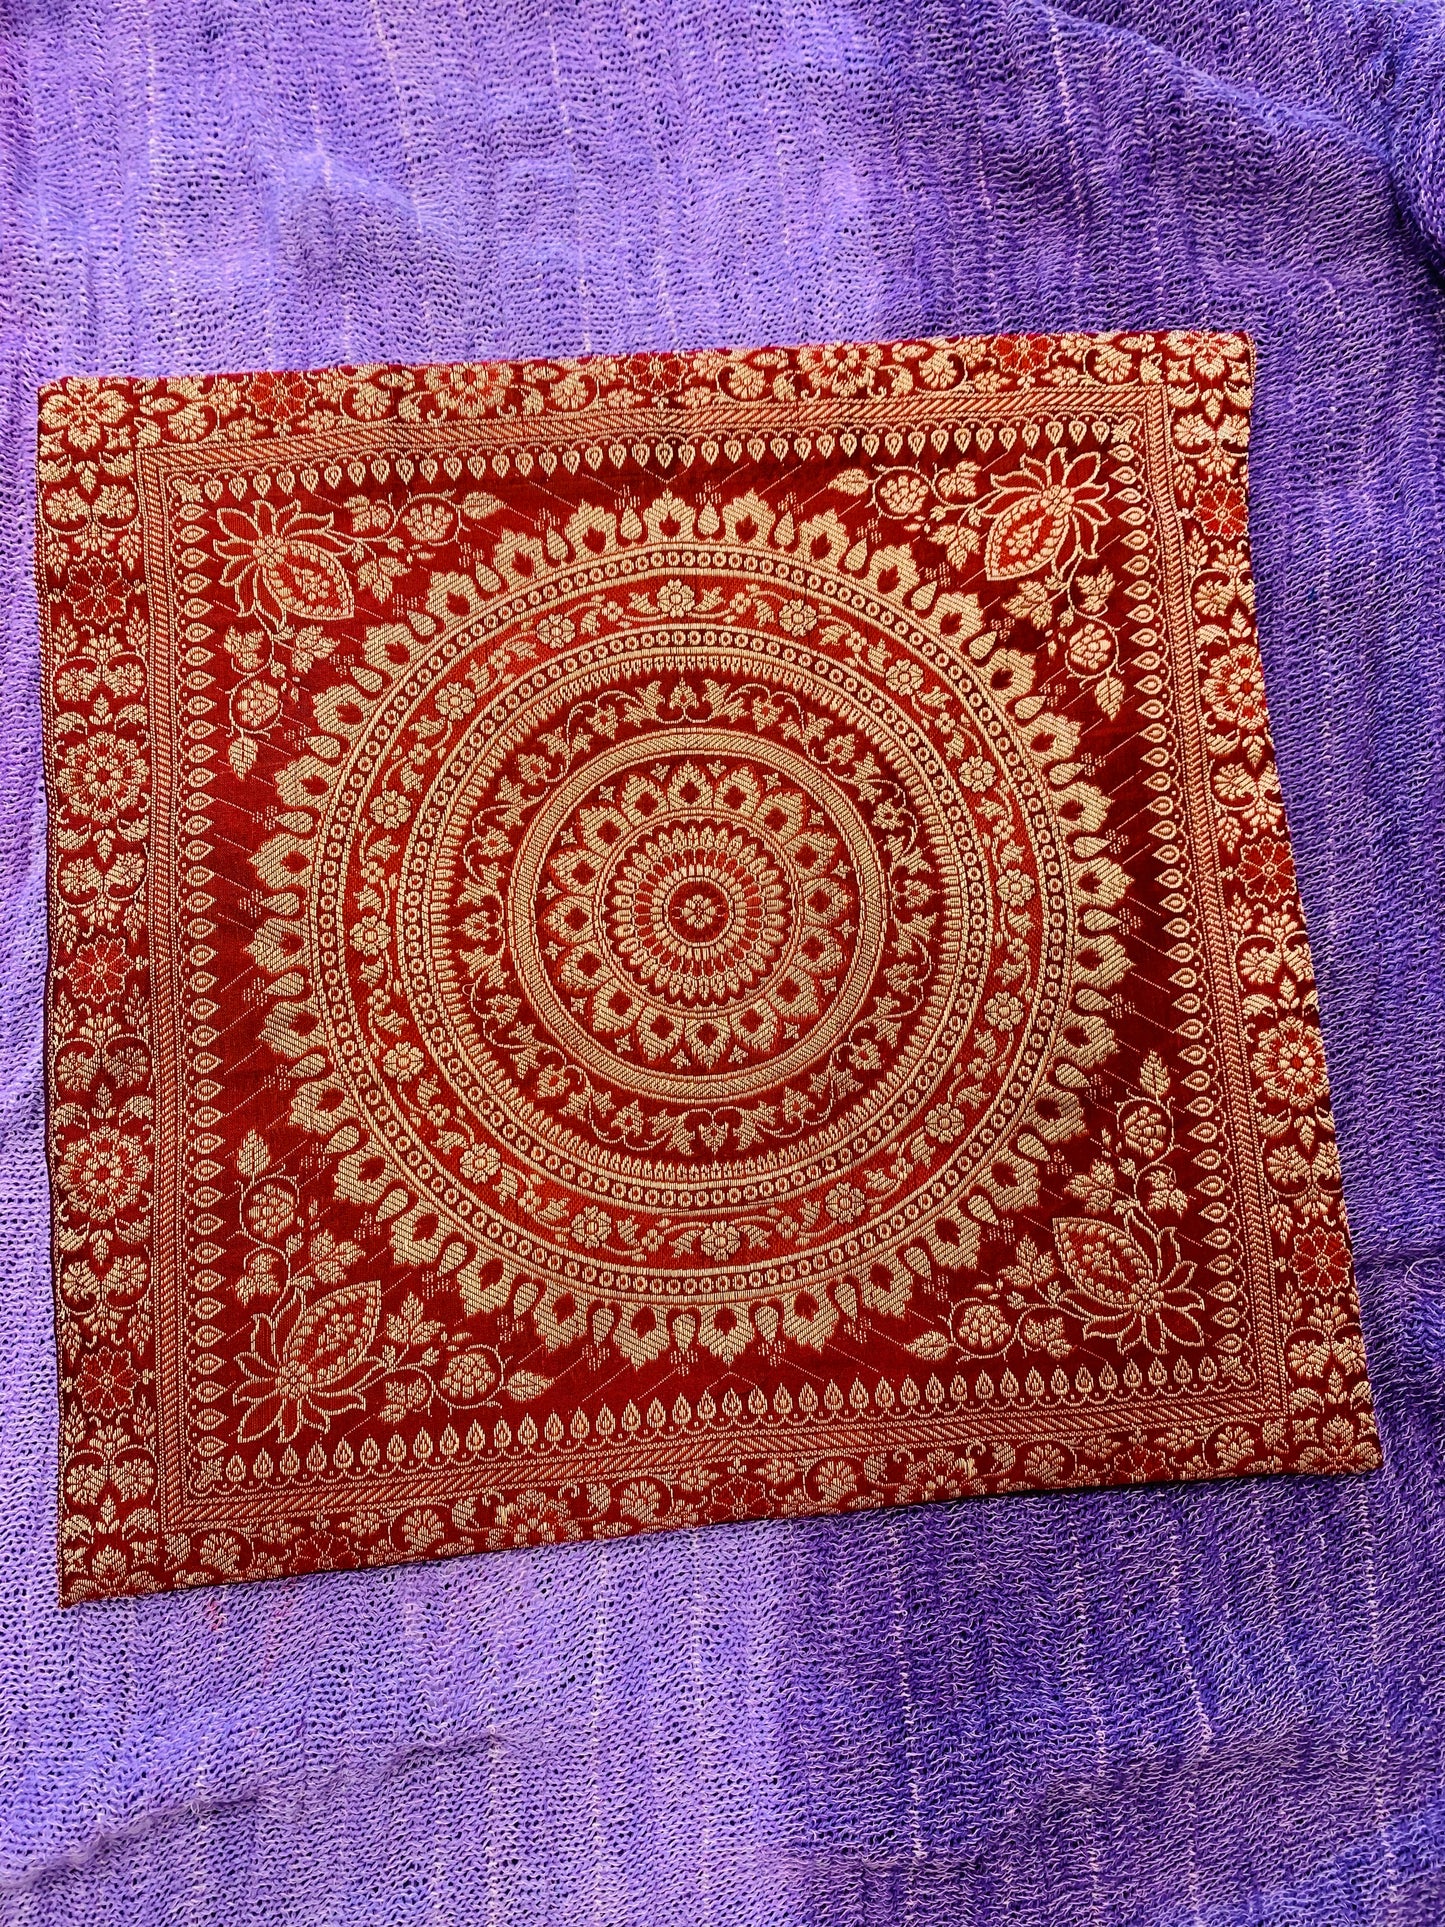 Boho style handcrafted ethnic Mandala cushion cover #792010